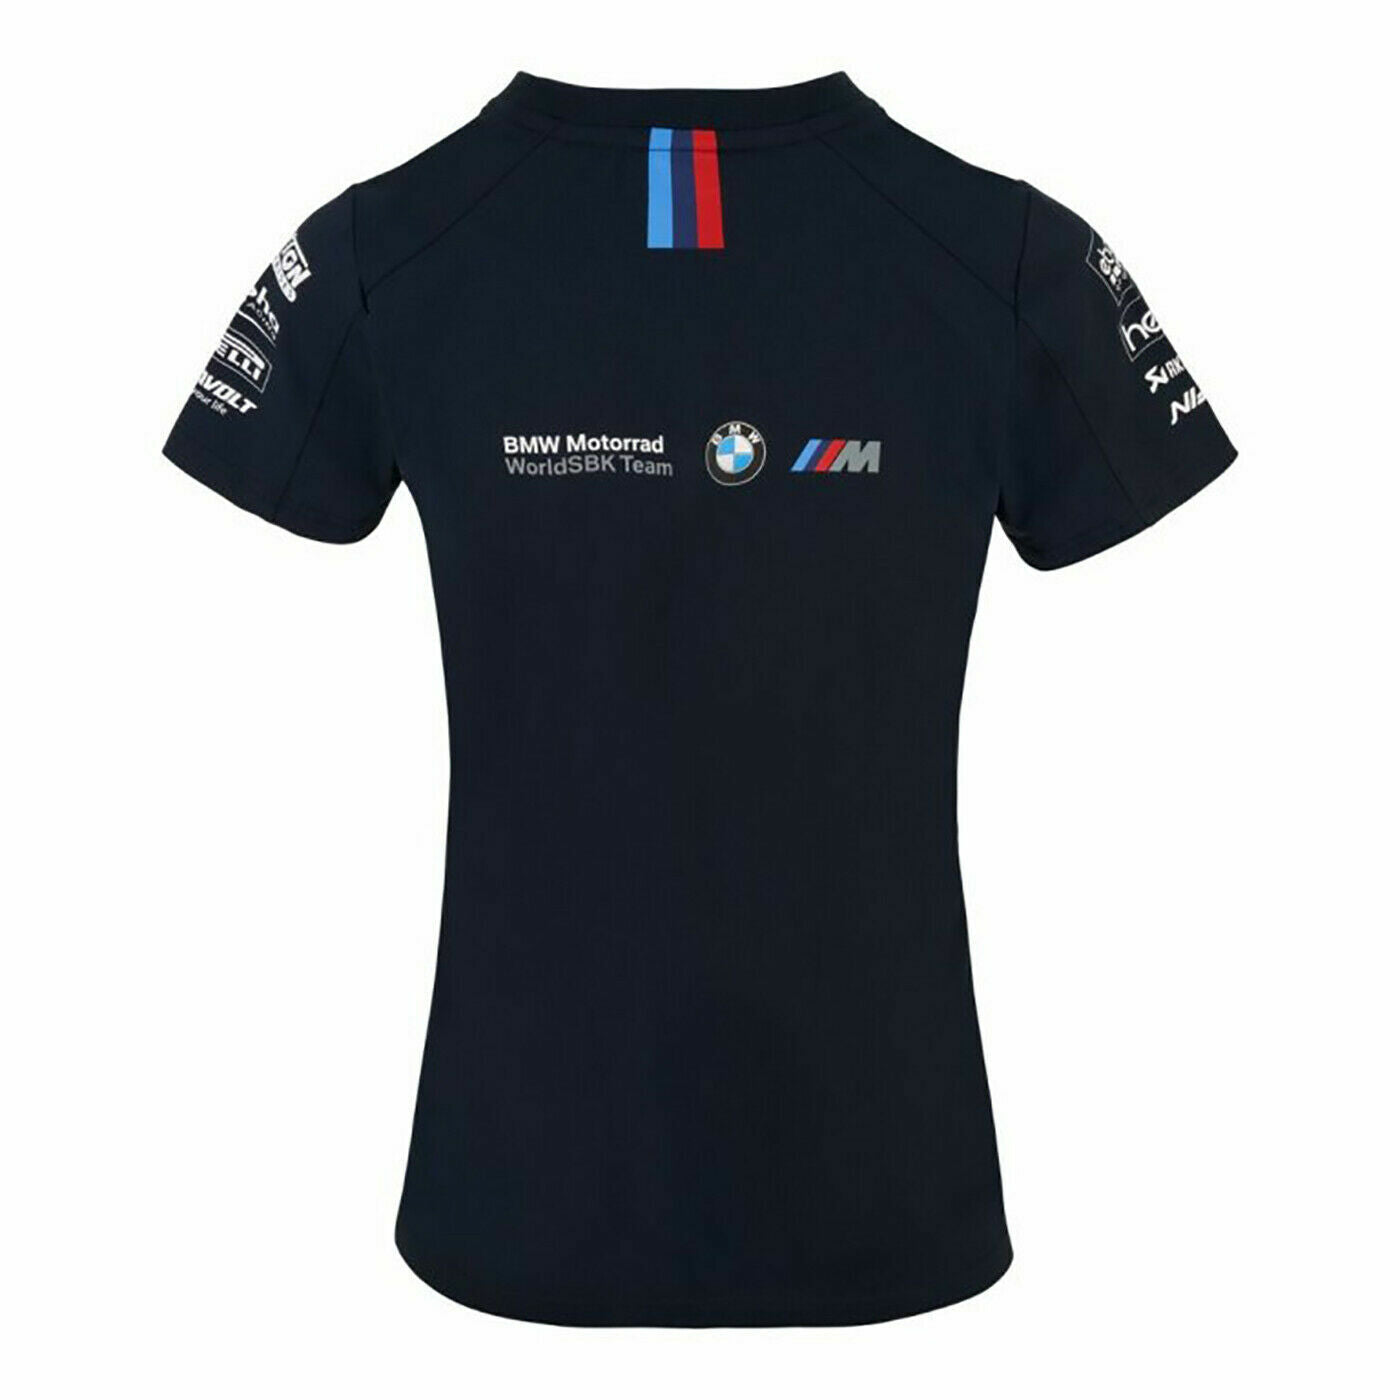 Official BMW Mottorad WSBK Team Woman's T Shirt - 20BMW-Sbk-Lt